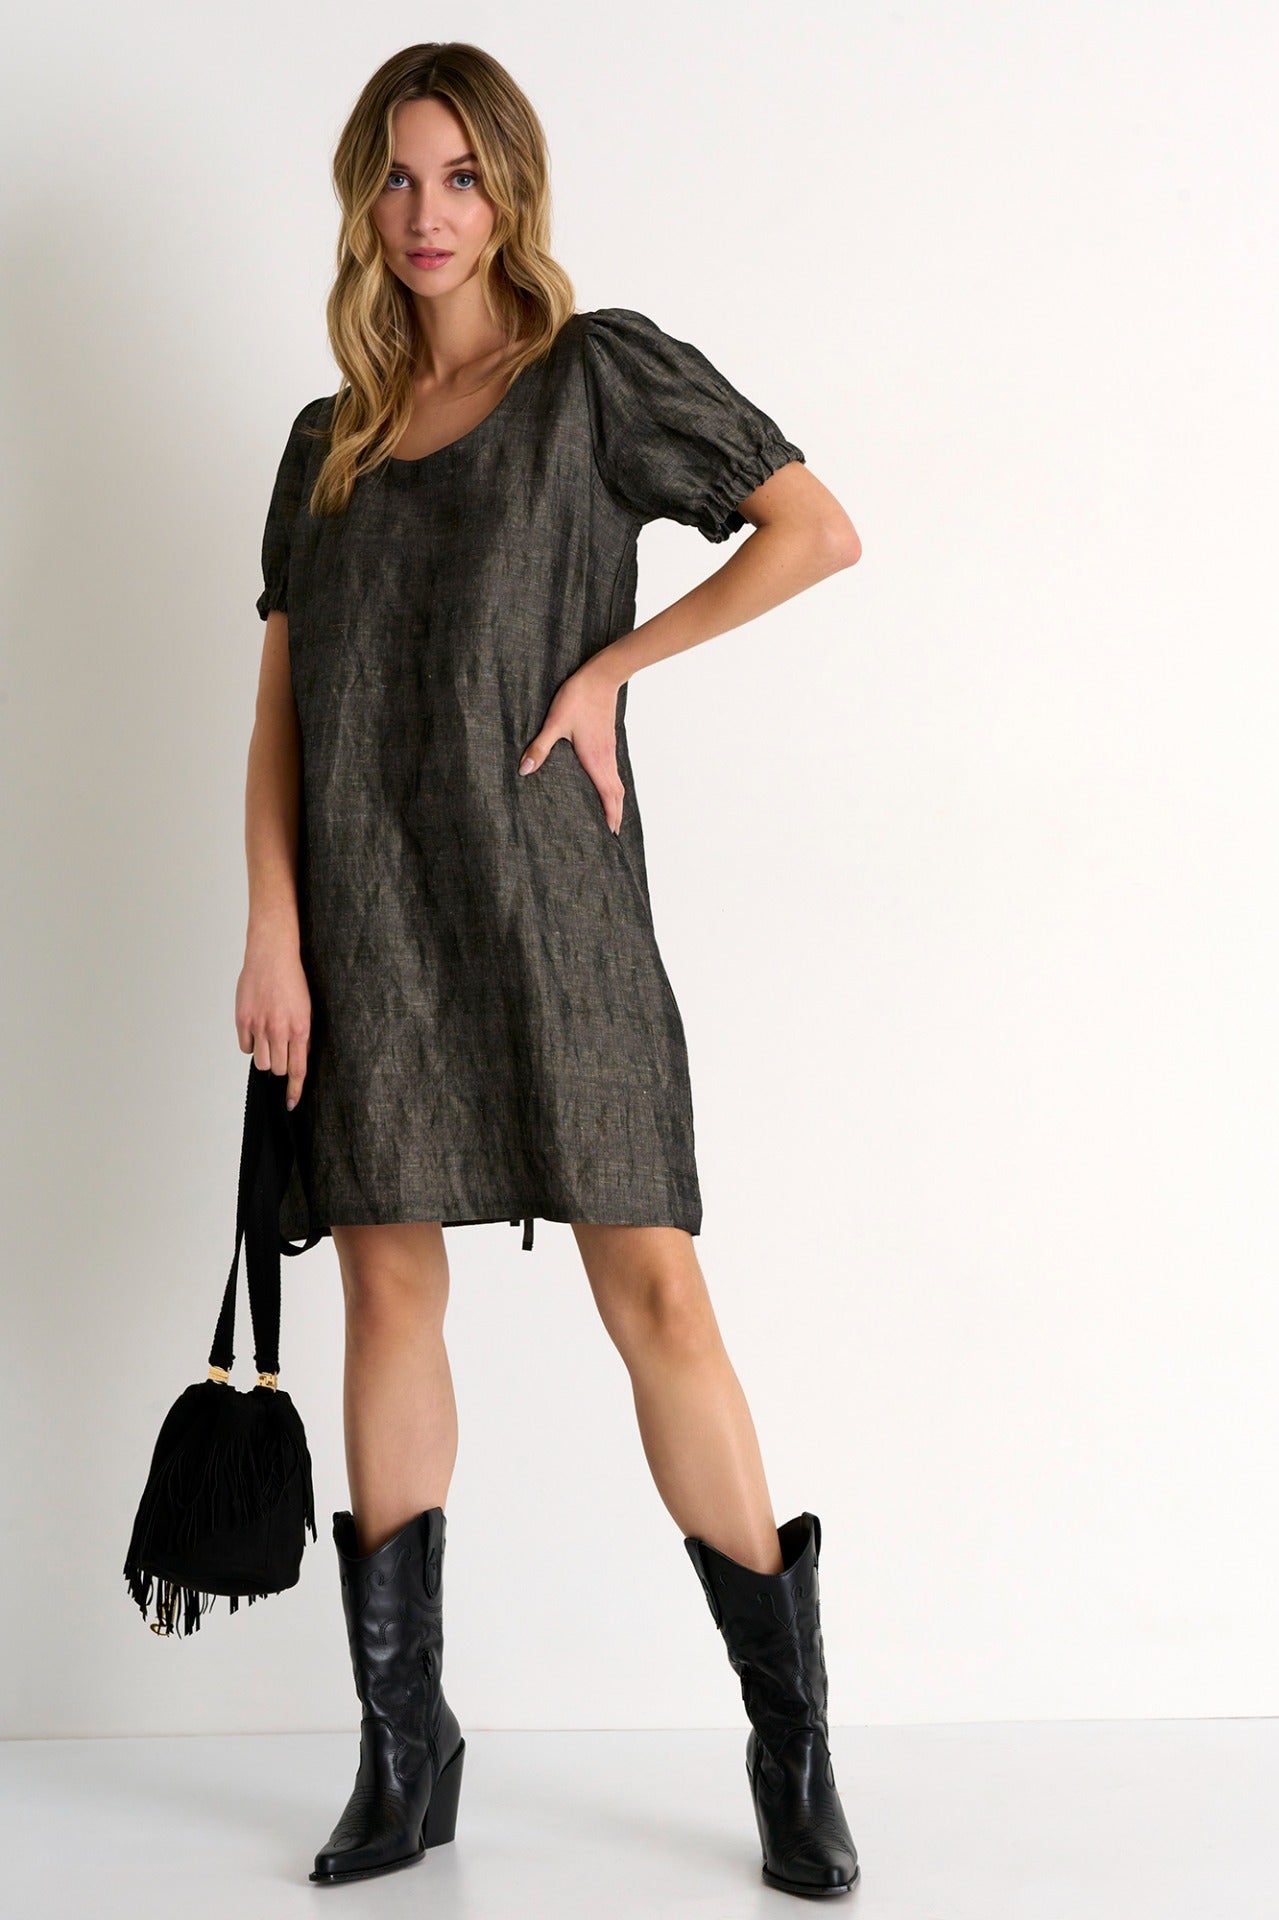 Puff Sleeve Dress - 52338-65-160 02 / 160 Grey / 60% VISCOSE, 40% LINEN